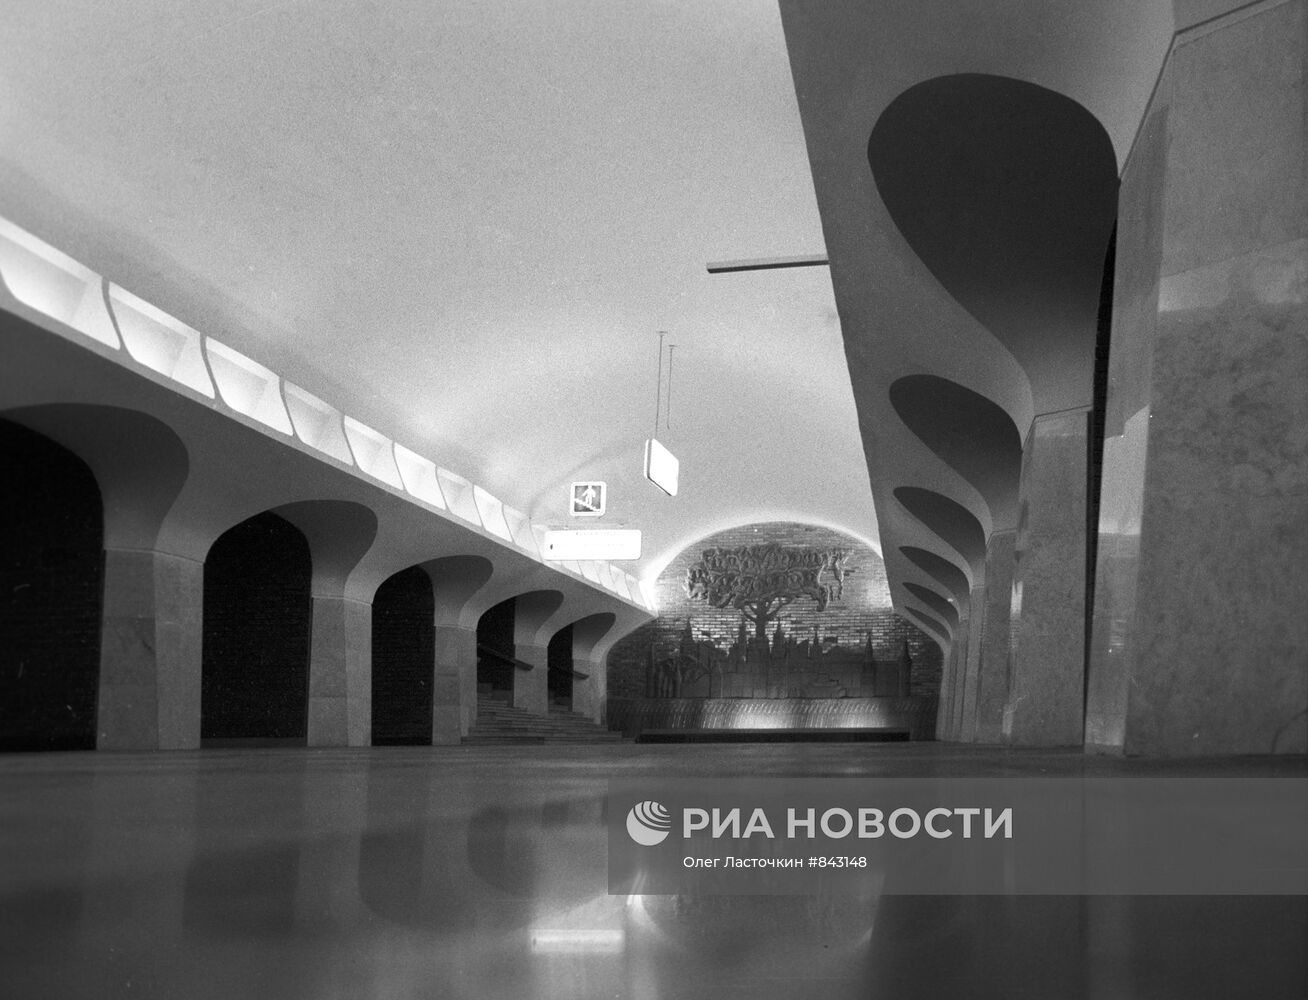 Станция метро "Боровицкая"